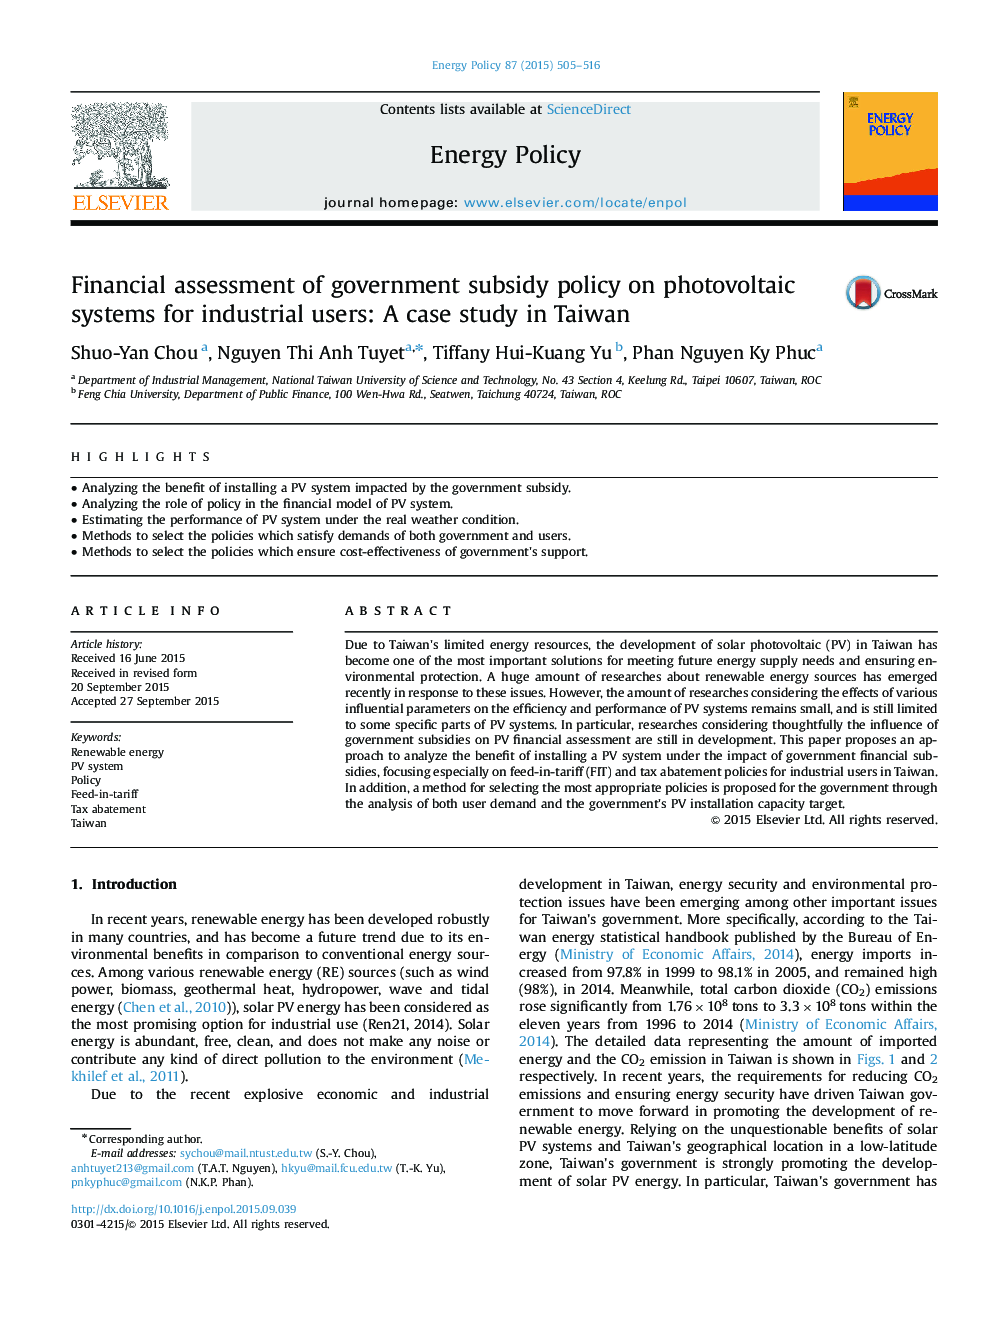 ارزیابی مالی سیاست های یارانه دولتی بر سیستم های فتوولتائیک برای کاربران صنعتی: مطالعه موردی در تایوان 